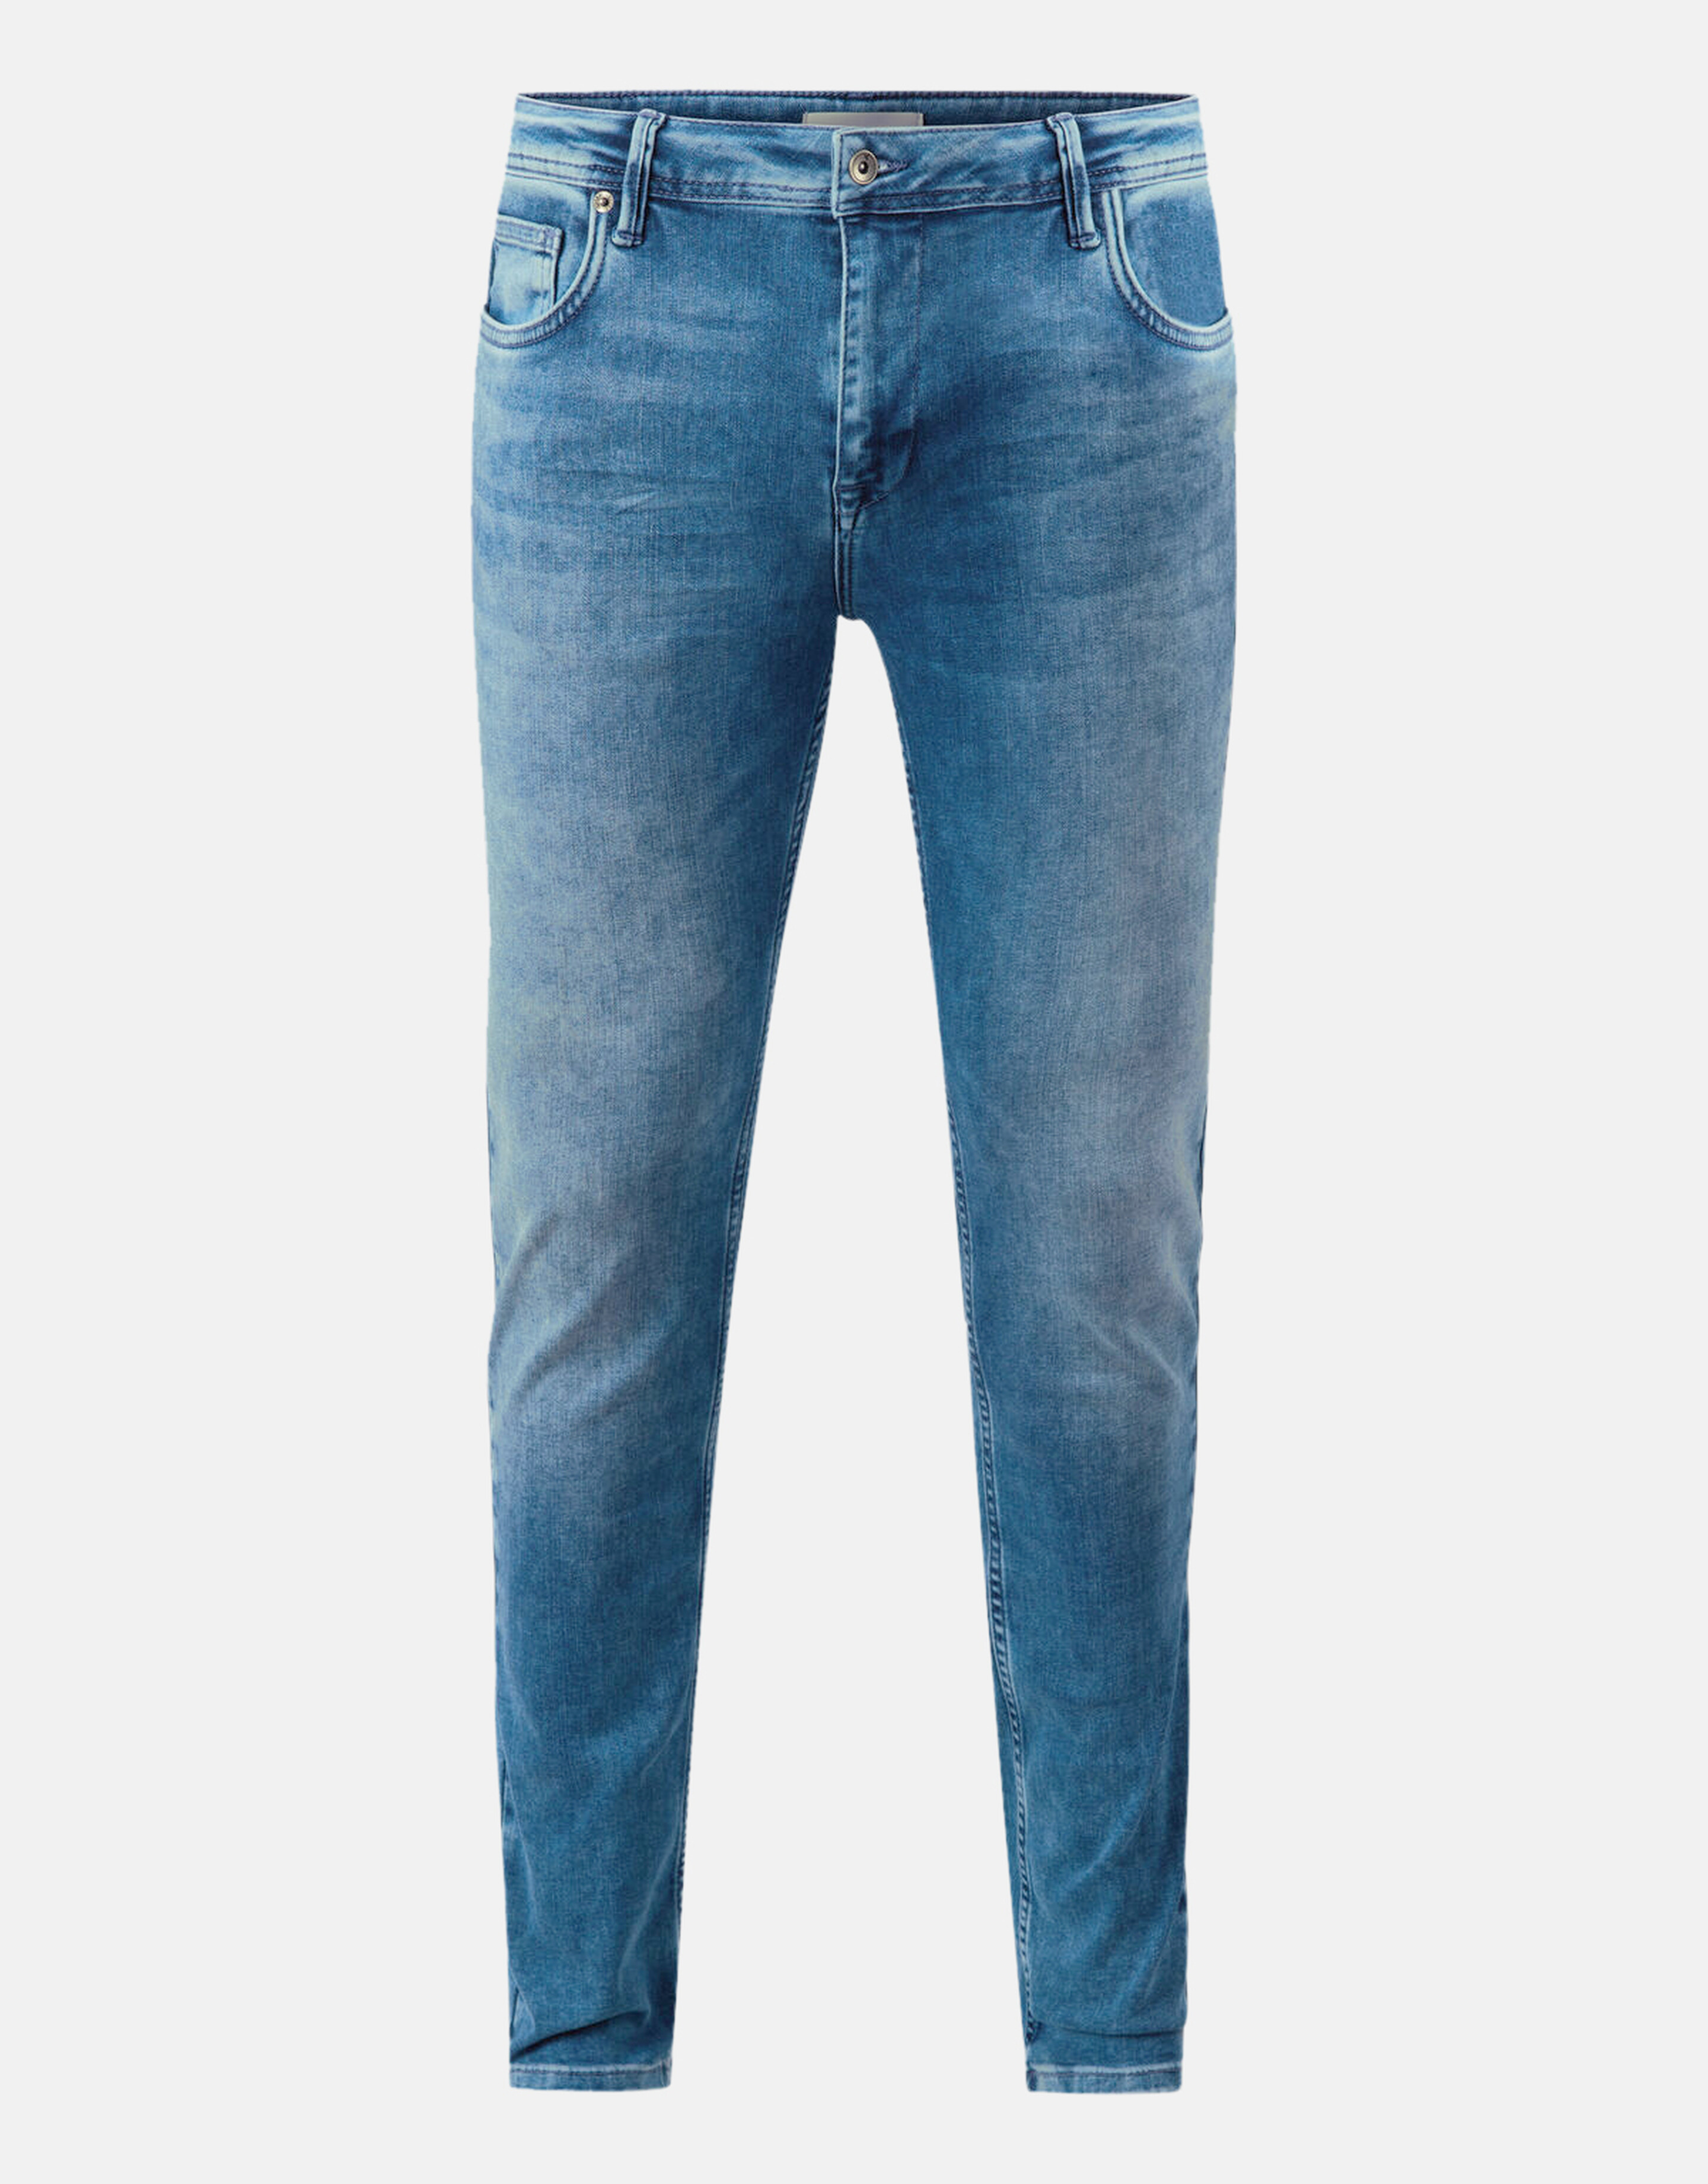 Slim Fit Jeans Mediumstone L32 Refill